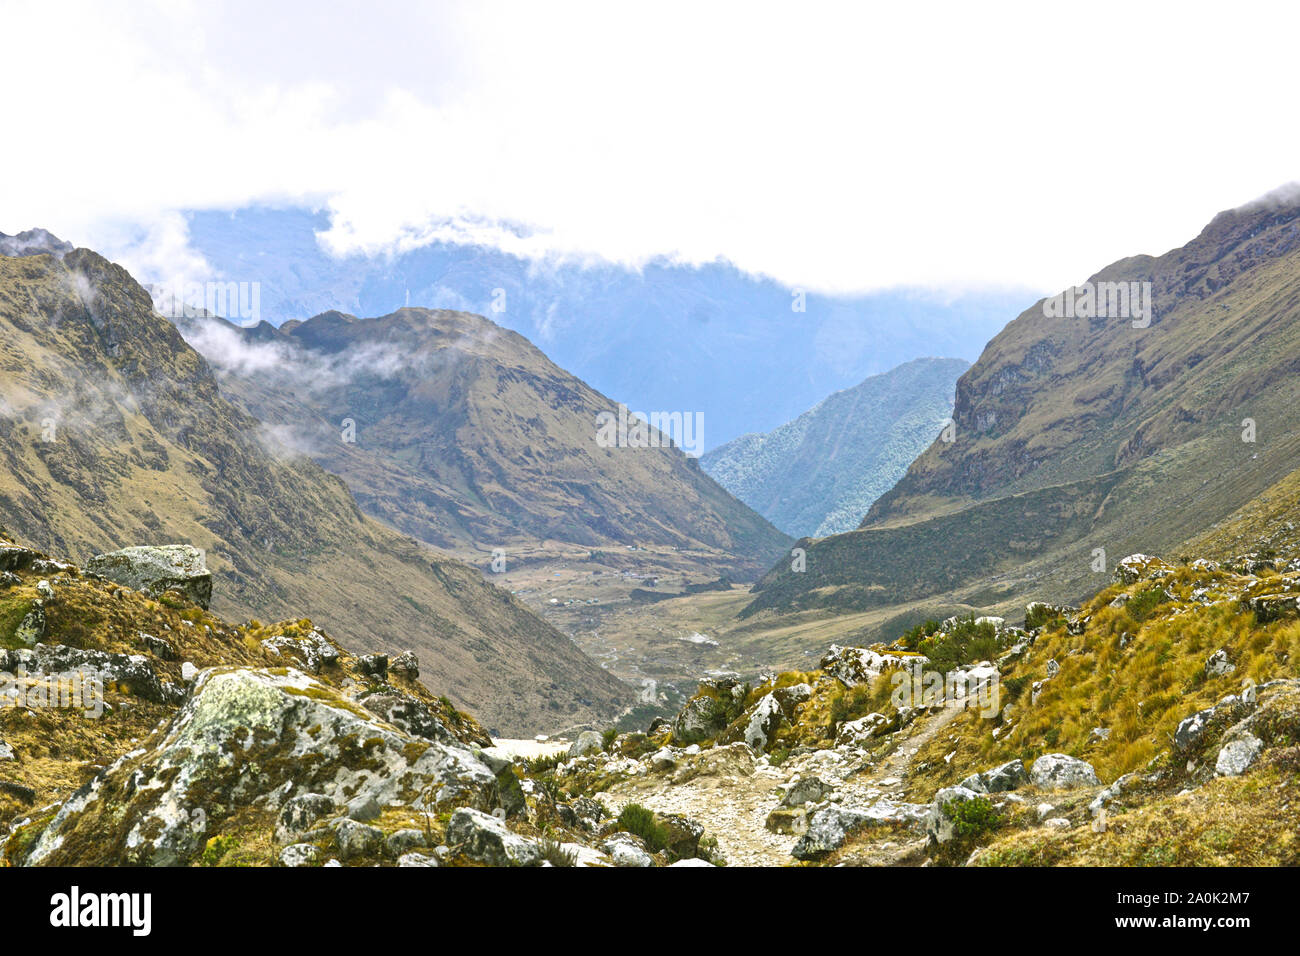 Il Salkantay trek in Perù (talvolta denominato Salcantay trail) è l'alternativa più popolare - Machu Picchu - offre agli escursionisti un incredibilmente diversificata esperienza di trekking, è relativamente facile accesso da Cusco e a differenza del classico Inca Trail, non vi sono limitazioni di permessi. Il sentiero soggiorni attraverso incredibili paesaggi dove la pianura giungla dà modo di highland impostazioni alpino e montagne ghiacciate, la più imponente delle quali è il Nevada Salkantay. Foto Stock